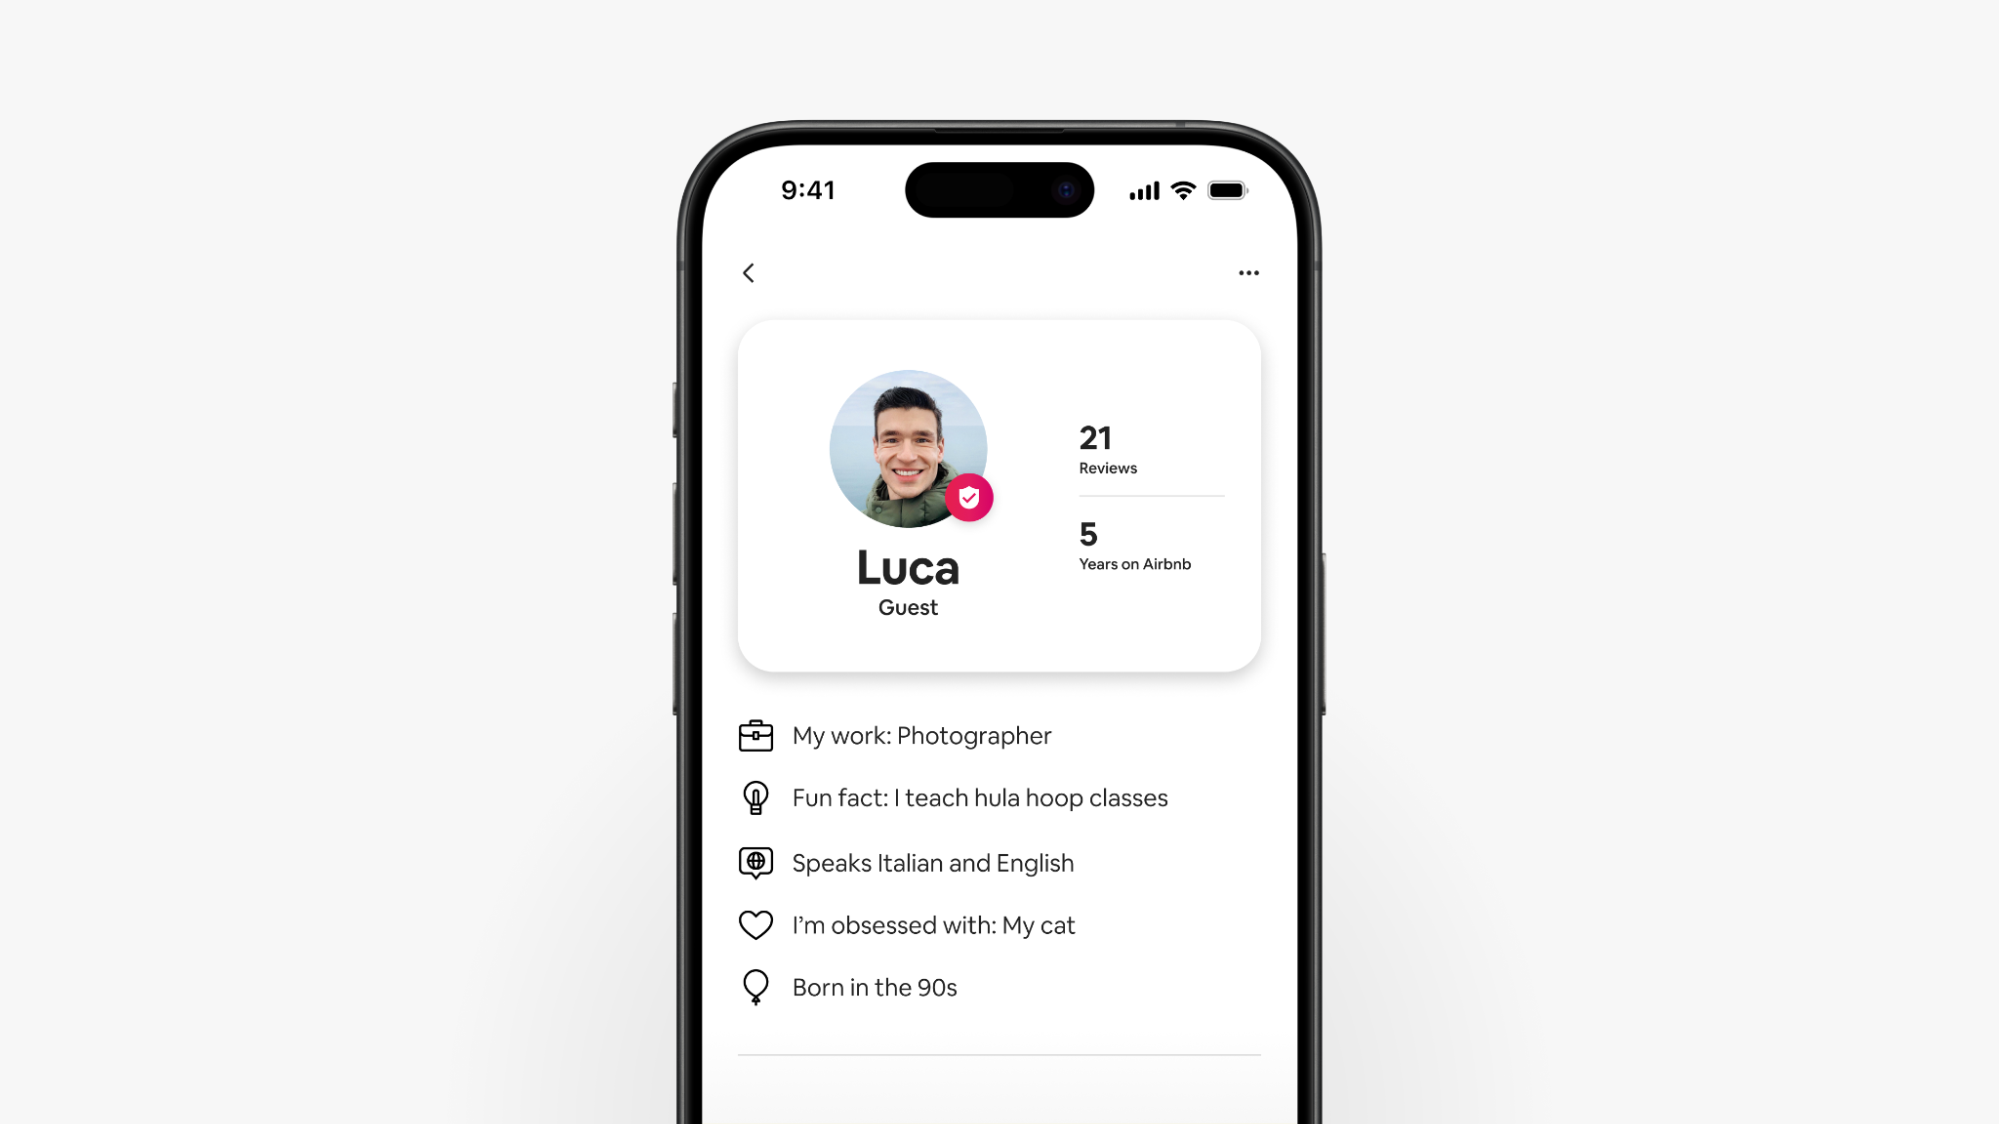 На знімку екрана смартфона показано оновлений профіль гостя Луки на Airbnb, де відображаються відгуки й подробиці про гостя.